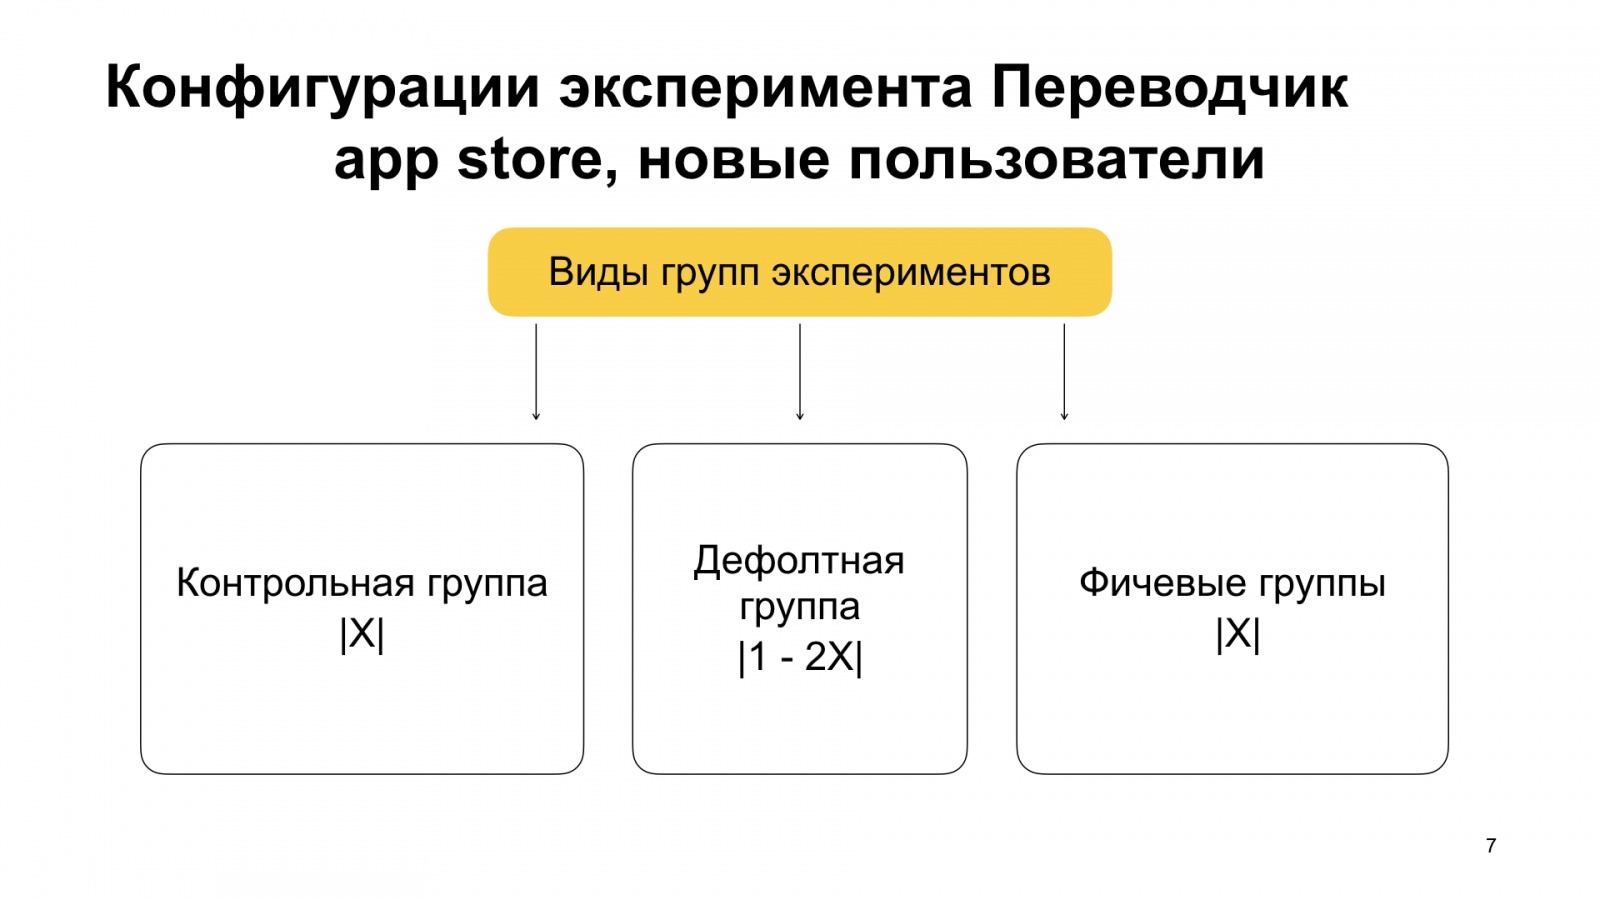 Как Браузер для iOS А-Б-тестирование улучшал. Доклад Яндекса - 8